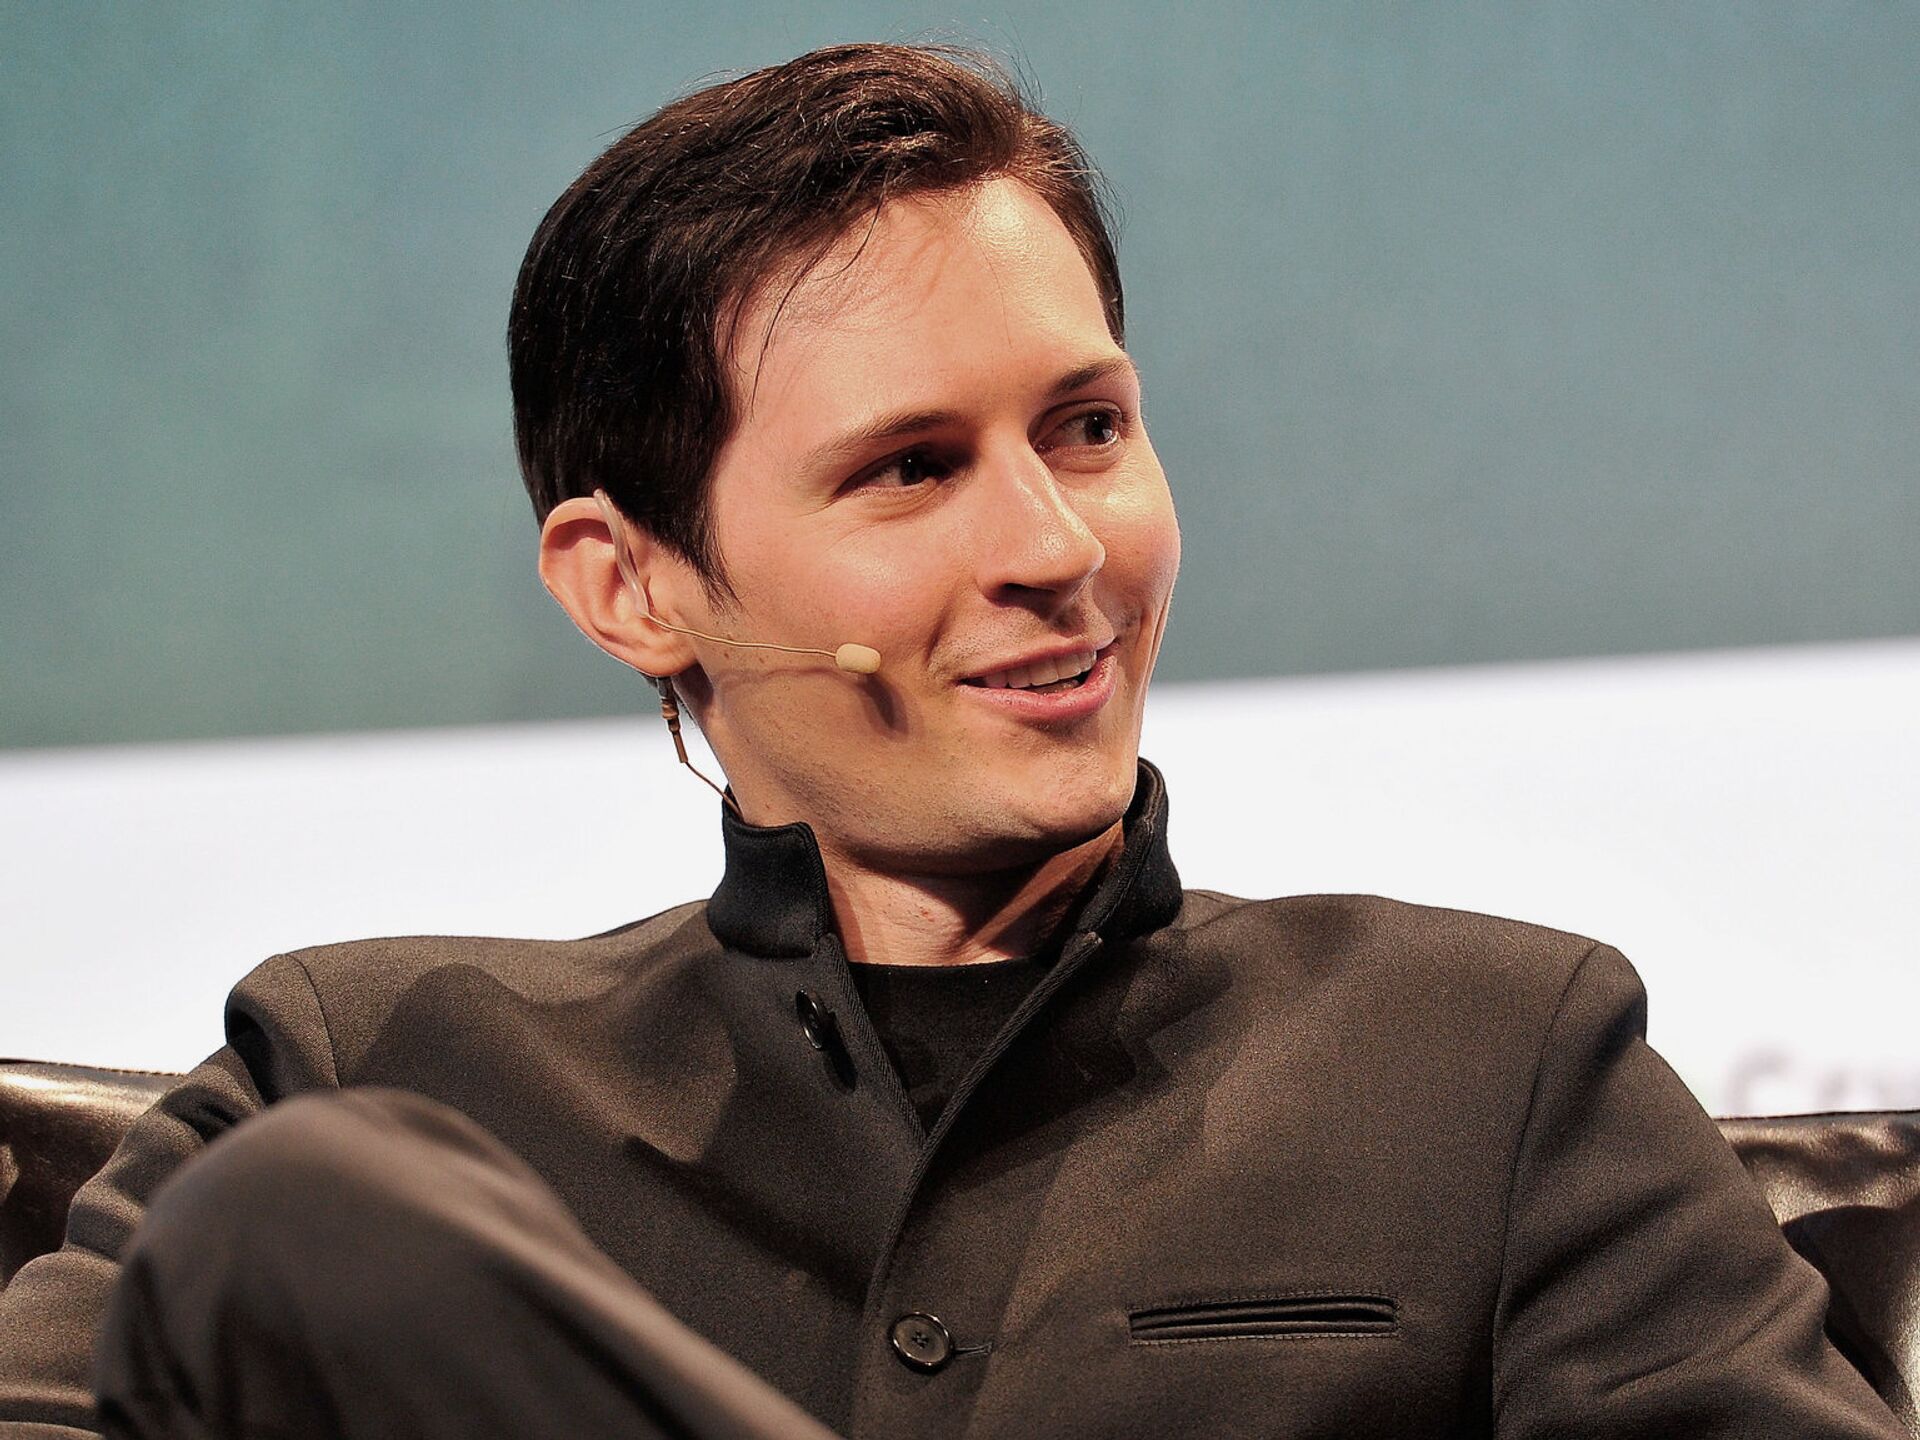 В интернете сравнили Павла Дурова с Джейсоном Стэйтемом за «пацанские» цитаты